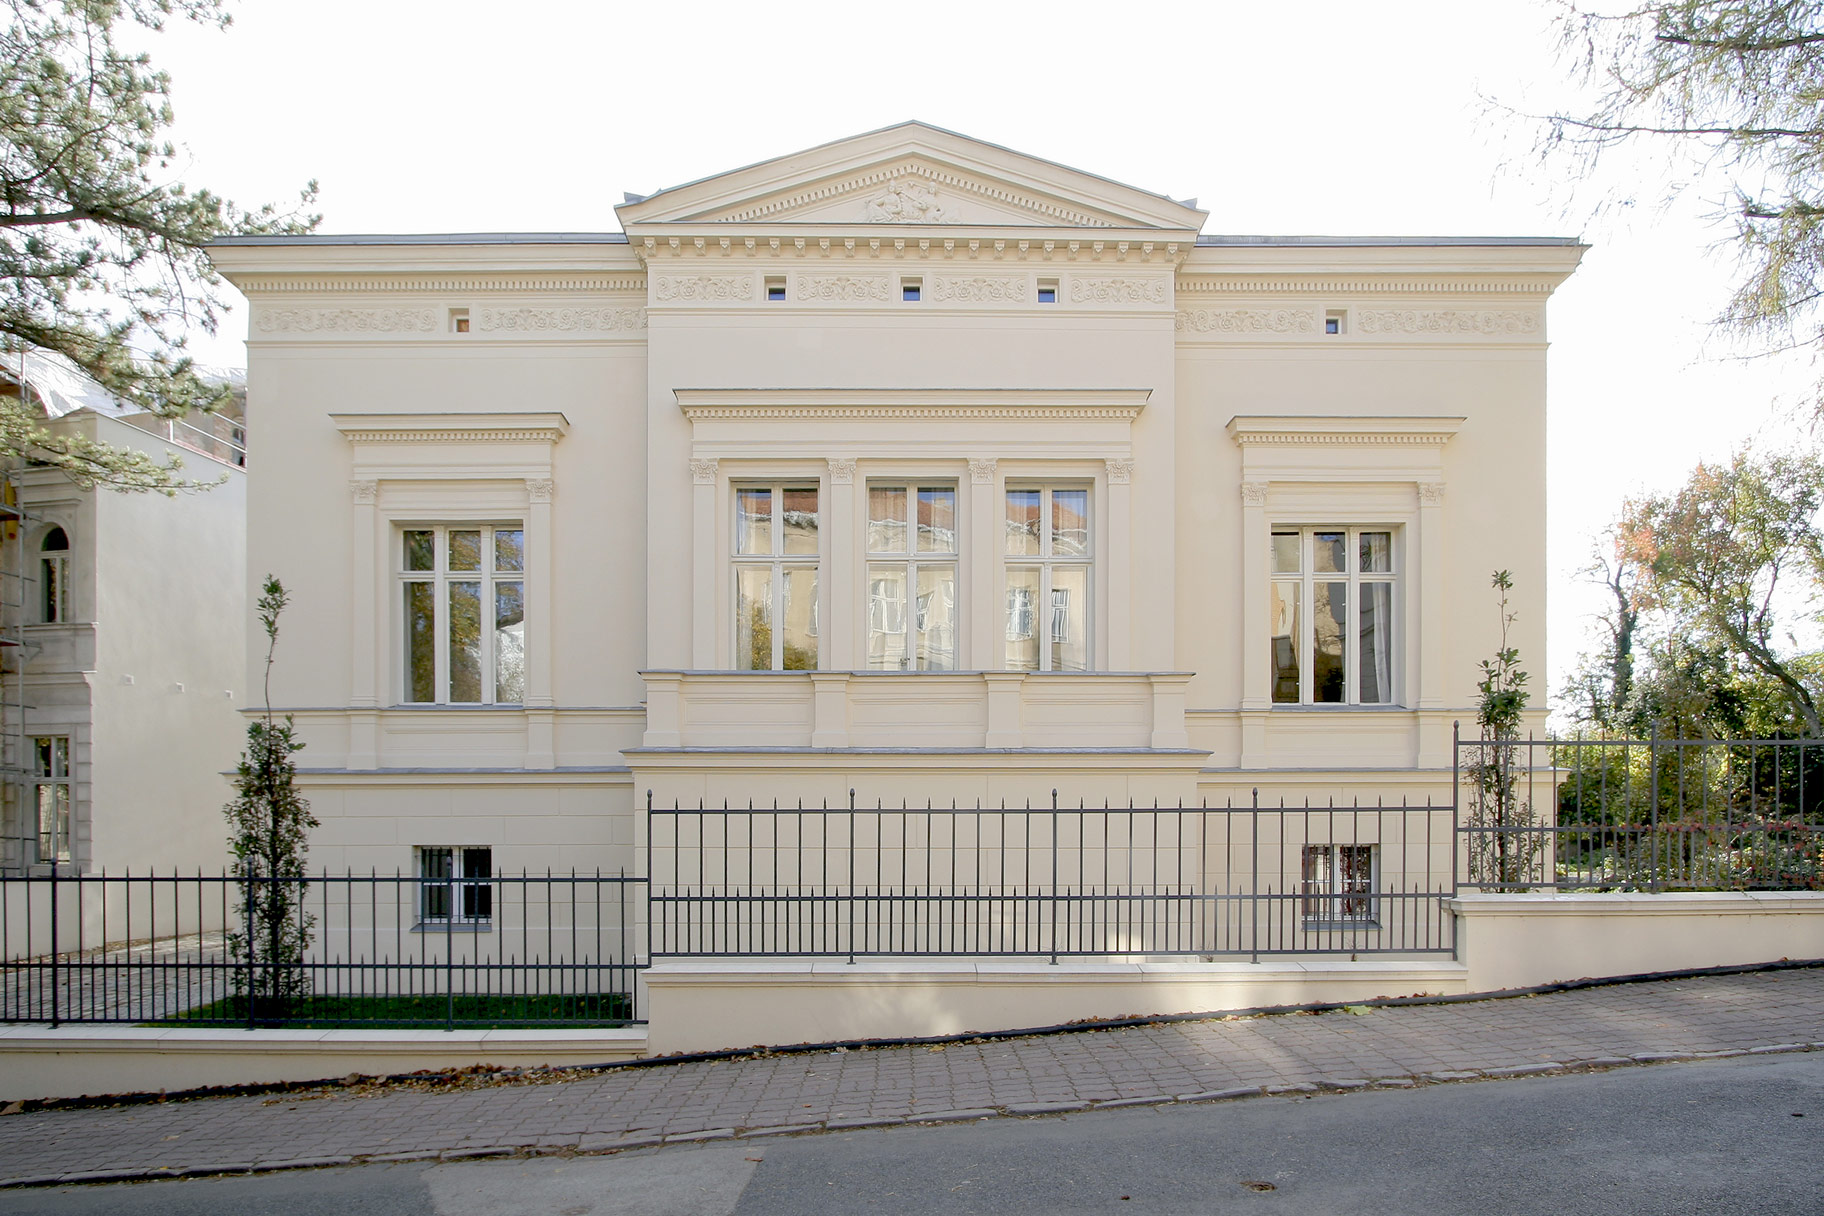  Umbau einer klassizistischen Villa eines Schülers von Persius in Potsdam